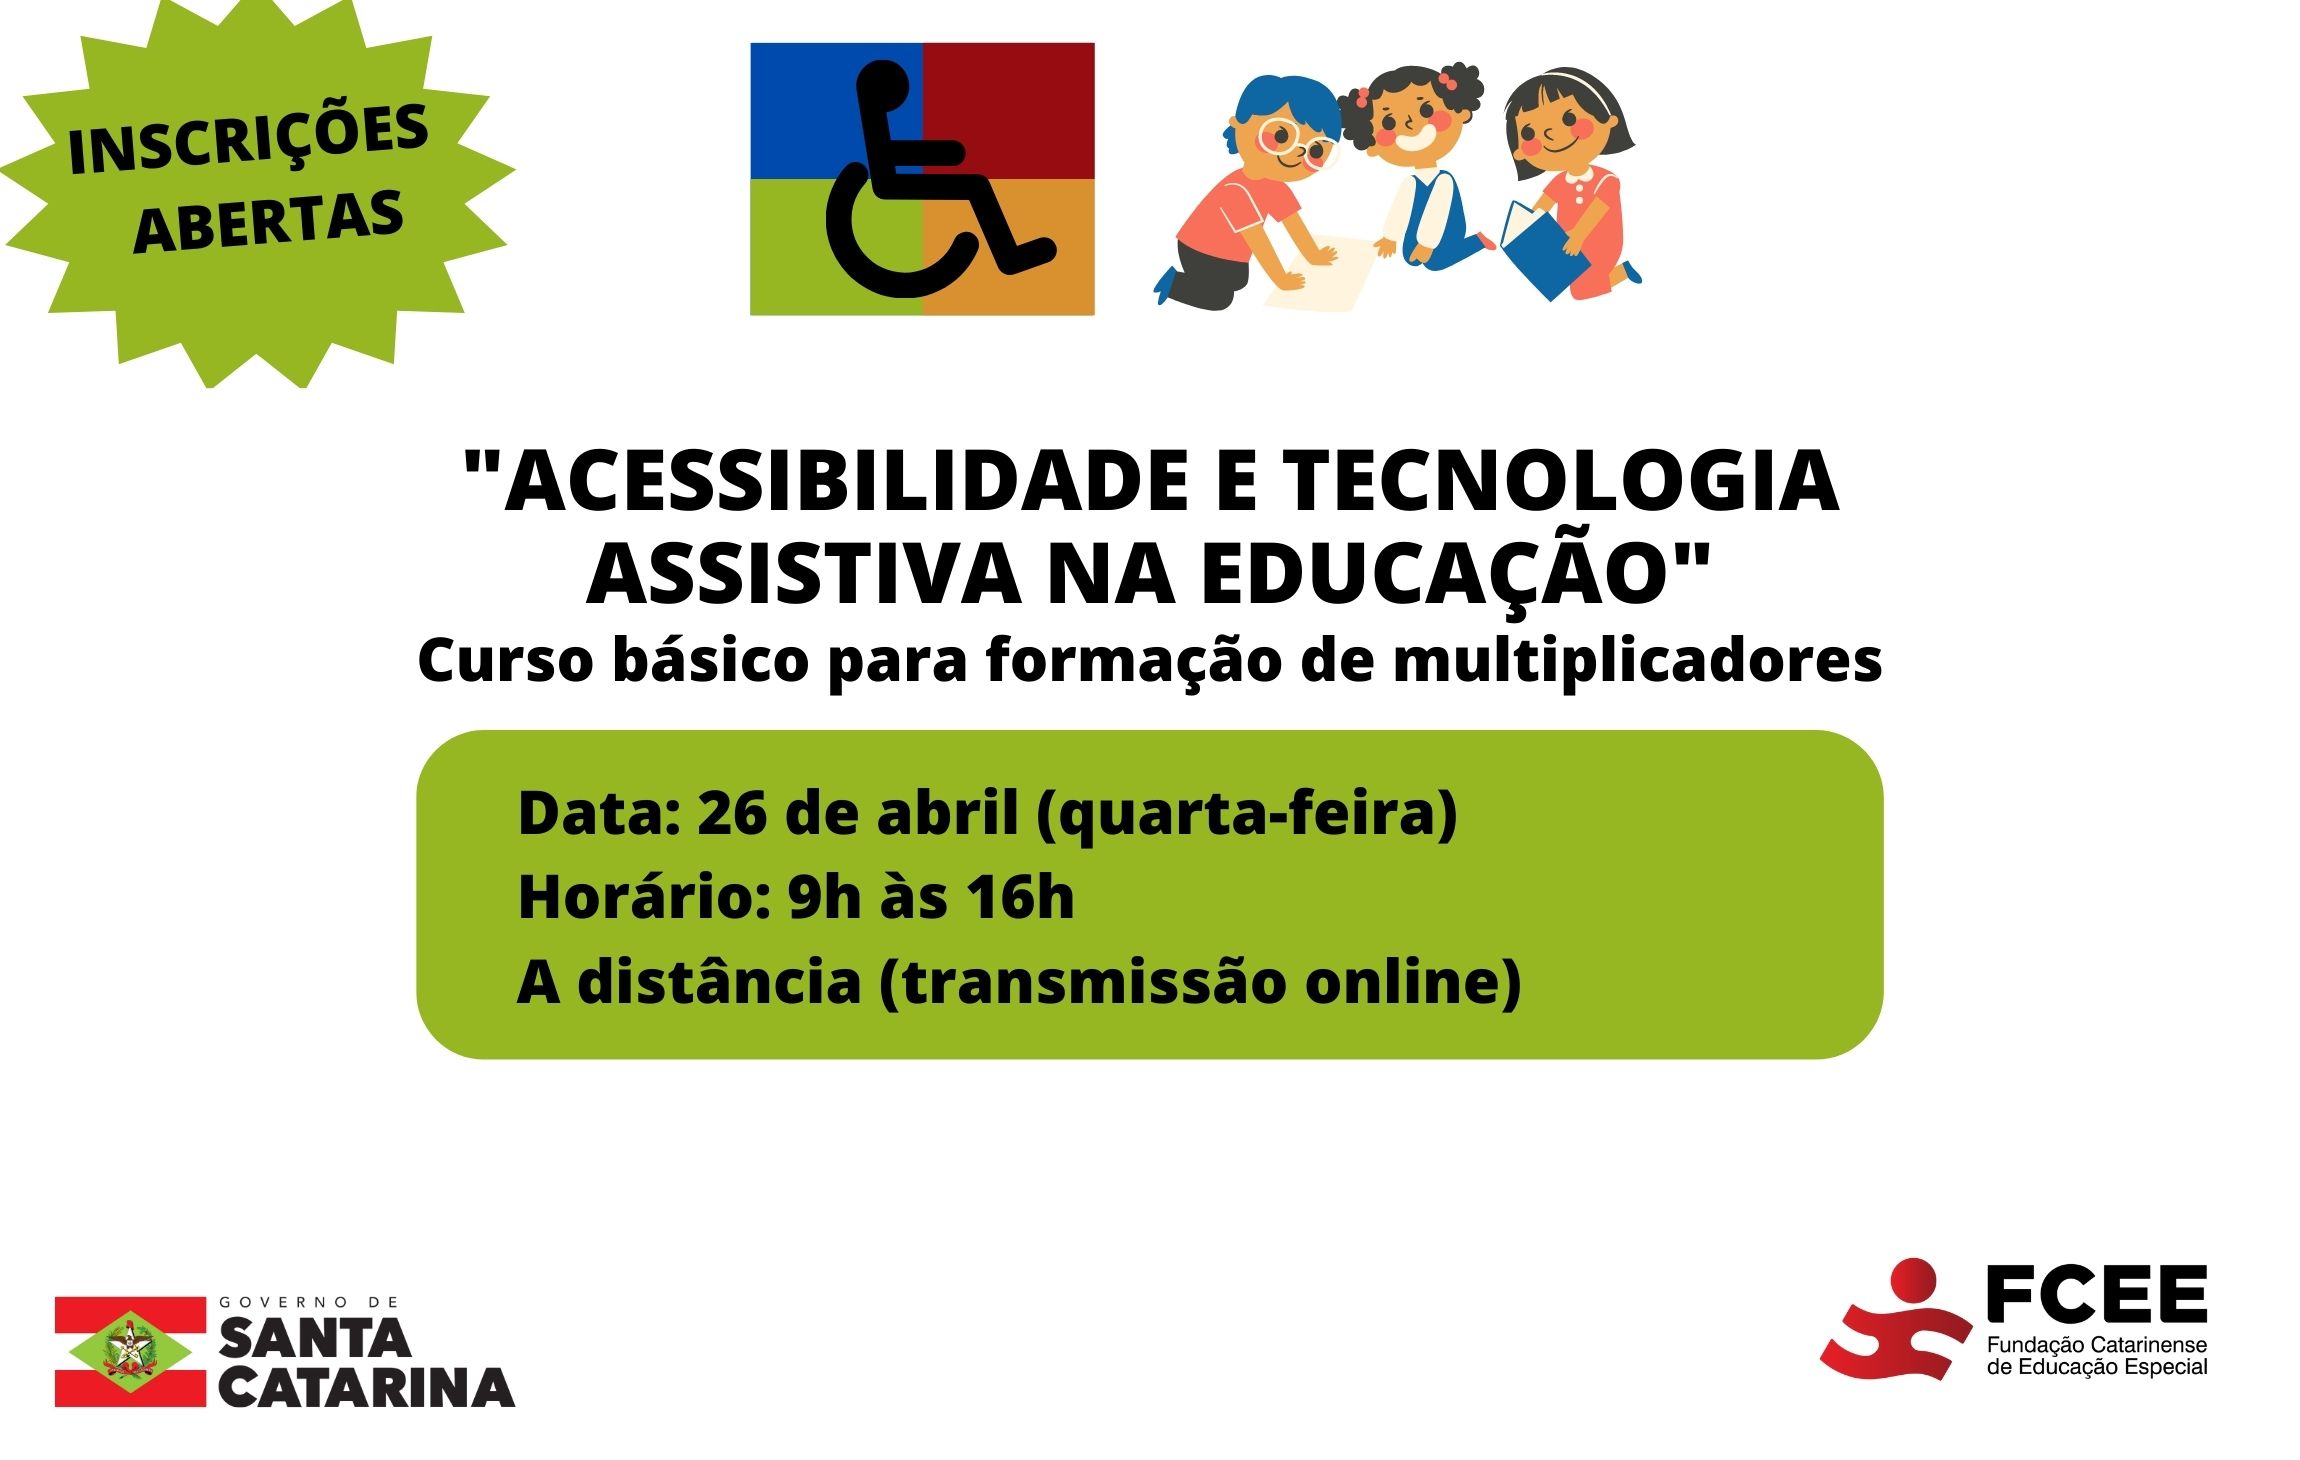 Imagem com texto: Inscrições abertas -acessibilidade e tecnologia assistiva na educação -